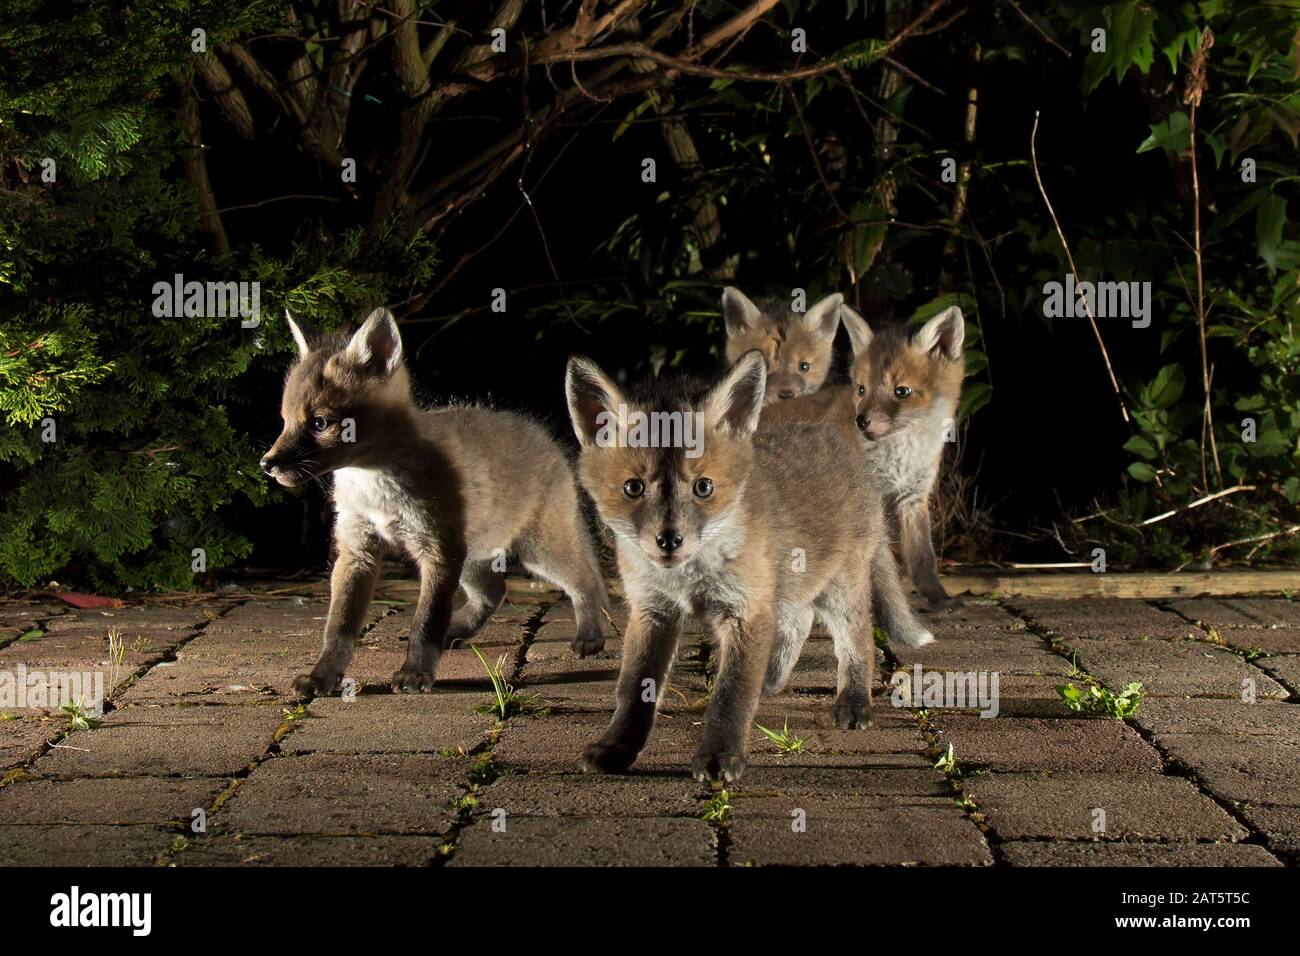 Primo piano di cuccioli selvatici di volpe rossa (Vulpes vulpes) isolati all'aperto di notte in giardino catturati sotto i riflettori. Carino volpi del bambino; fauna selvatica urbana. Foto Stock